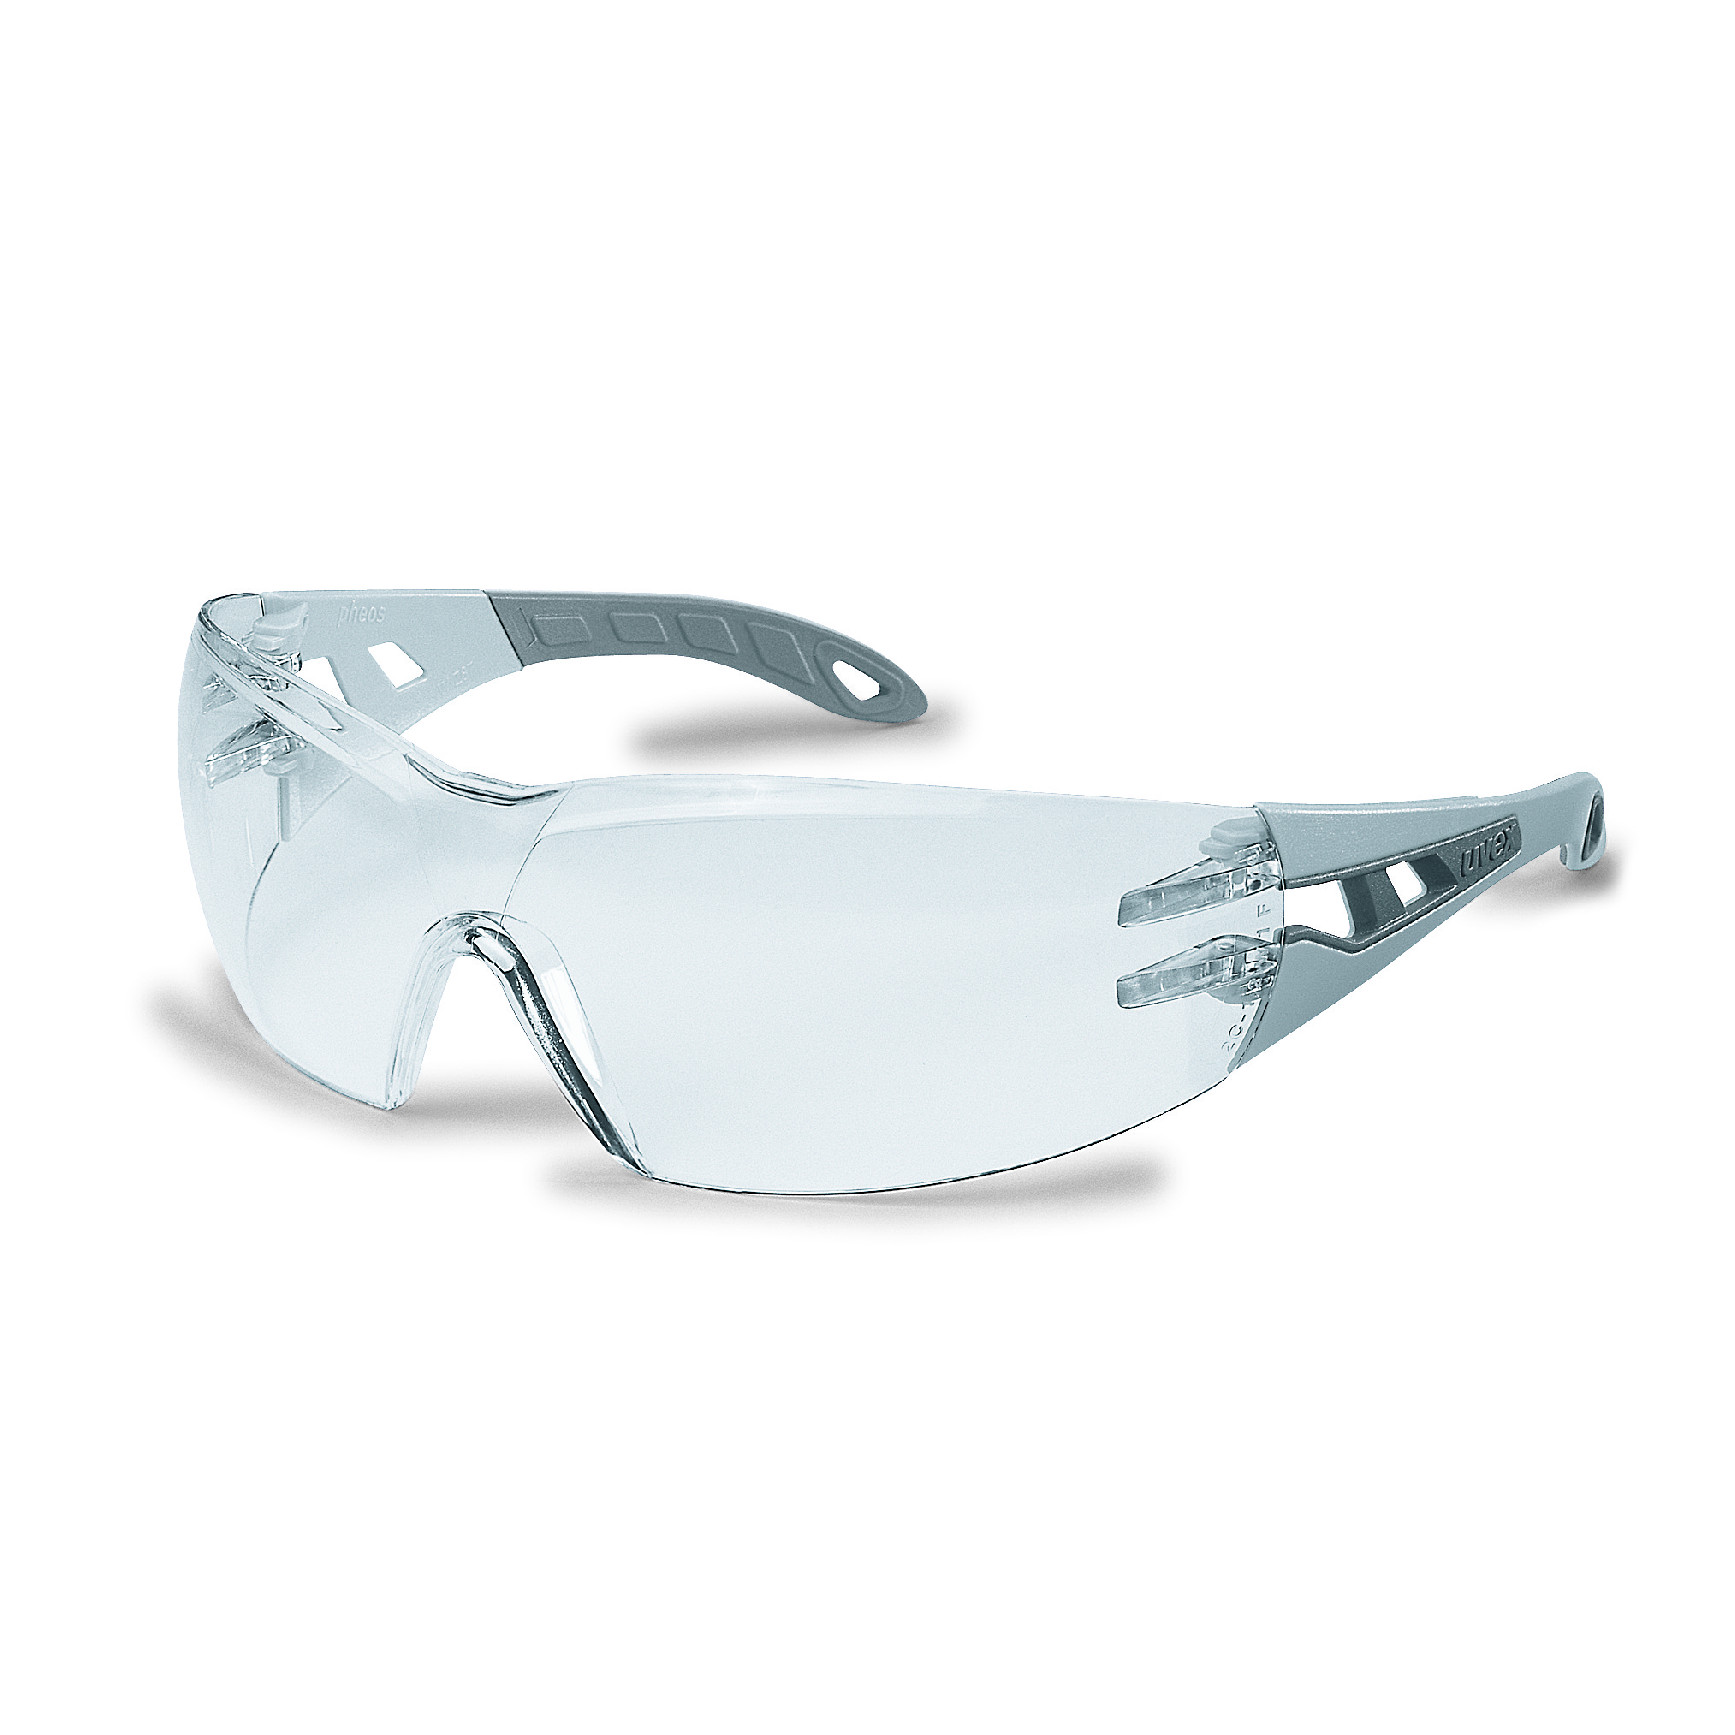 Brýle uvex pheos Kód produktu: 9192215, Provedení zorníku: PC čirý/UV 2C-1,2; SV excellence, stranice světle šedá/šedá